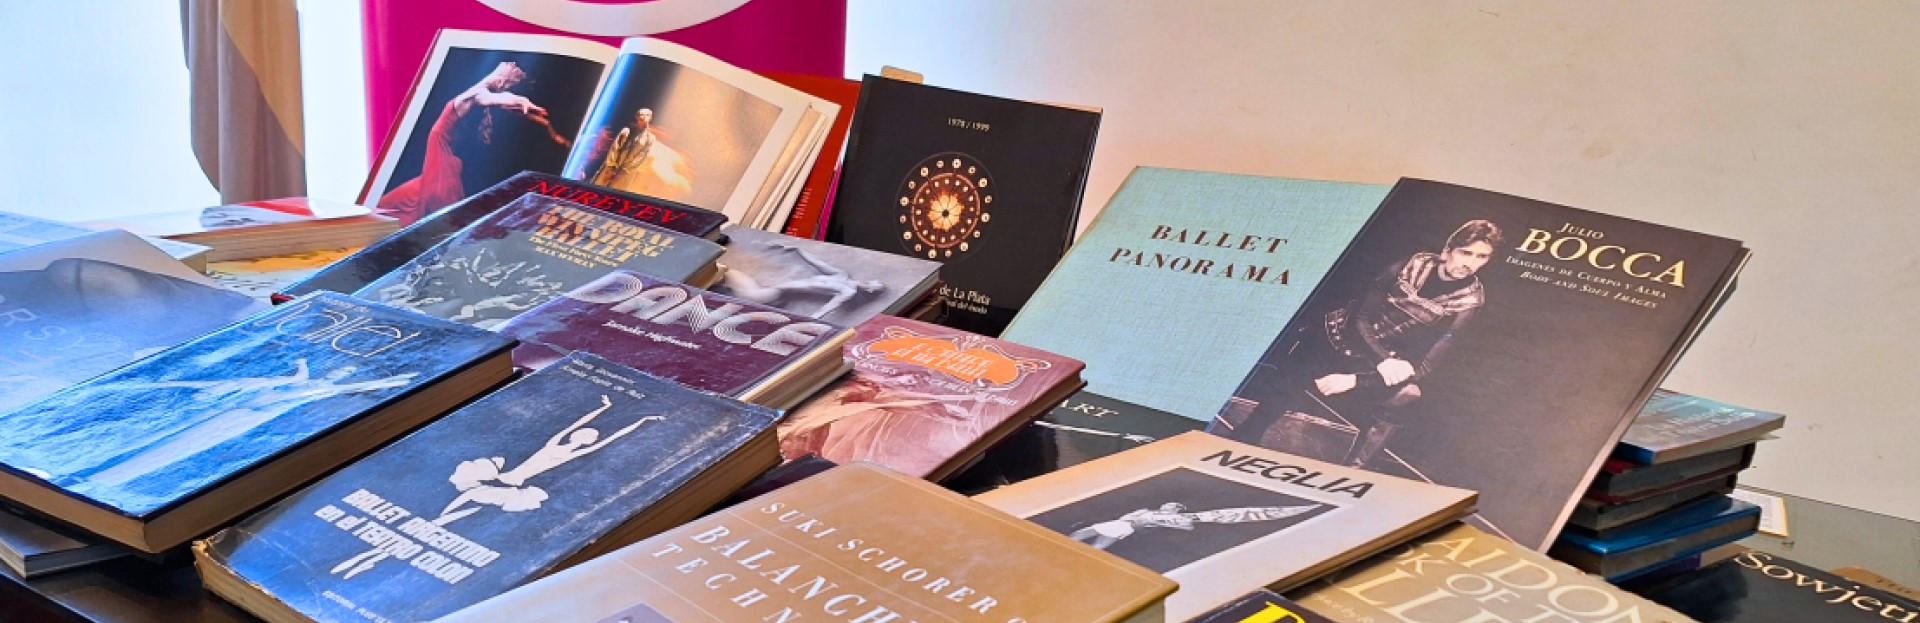 El DAM recibió la donación de más de cien libros pertenecientes a la colección del bailarín Roberto Mezzera